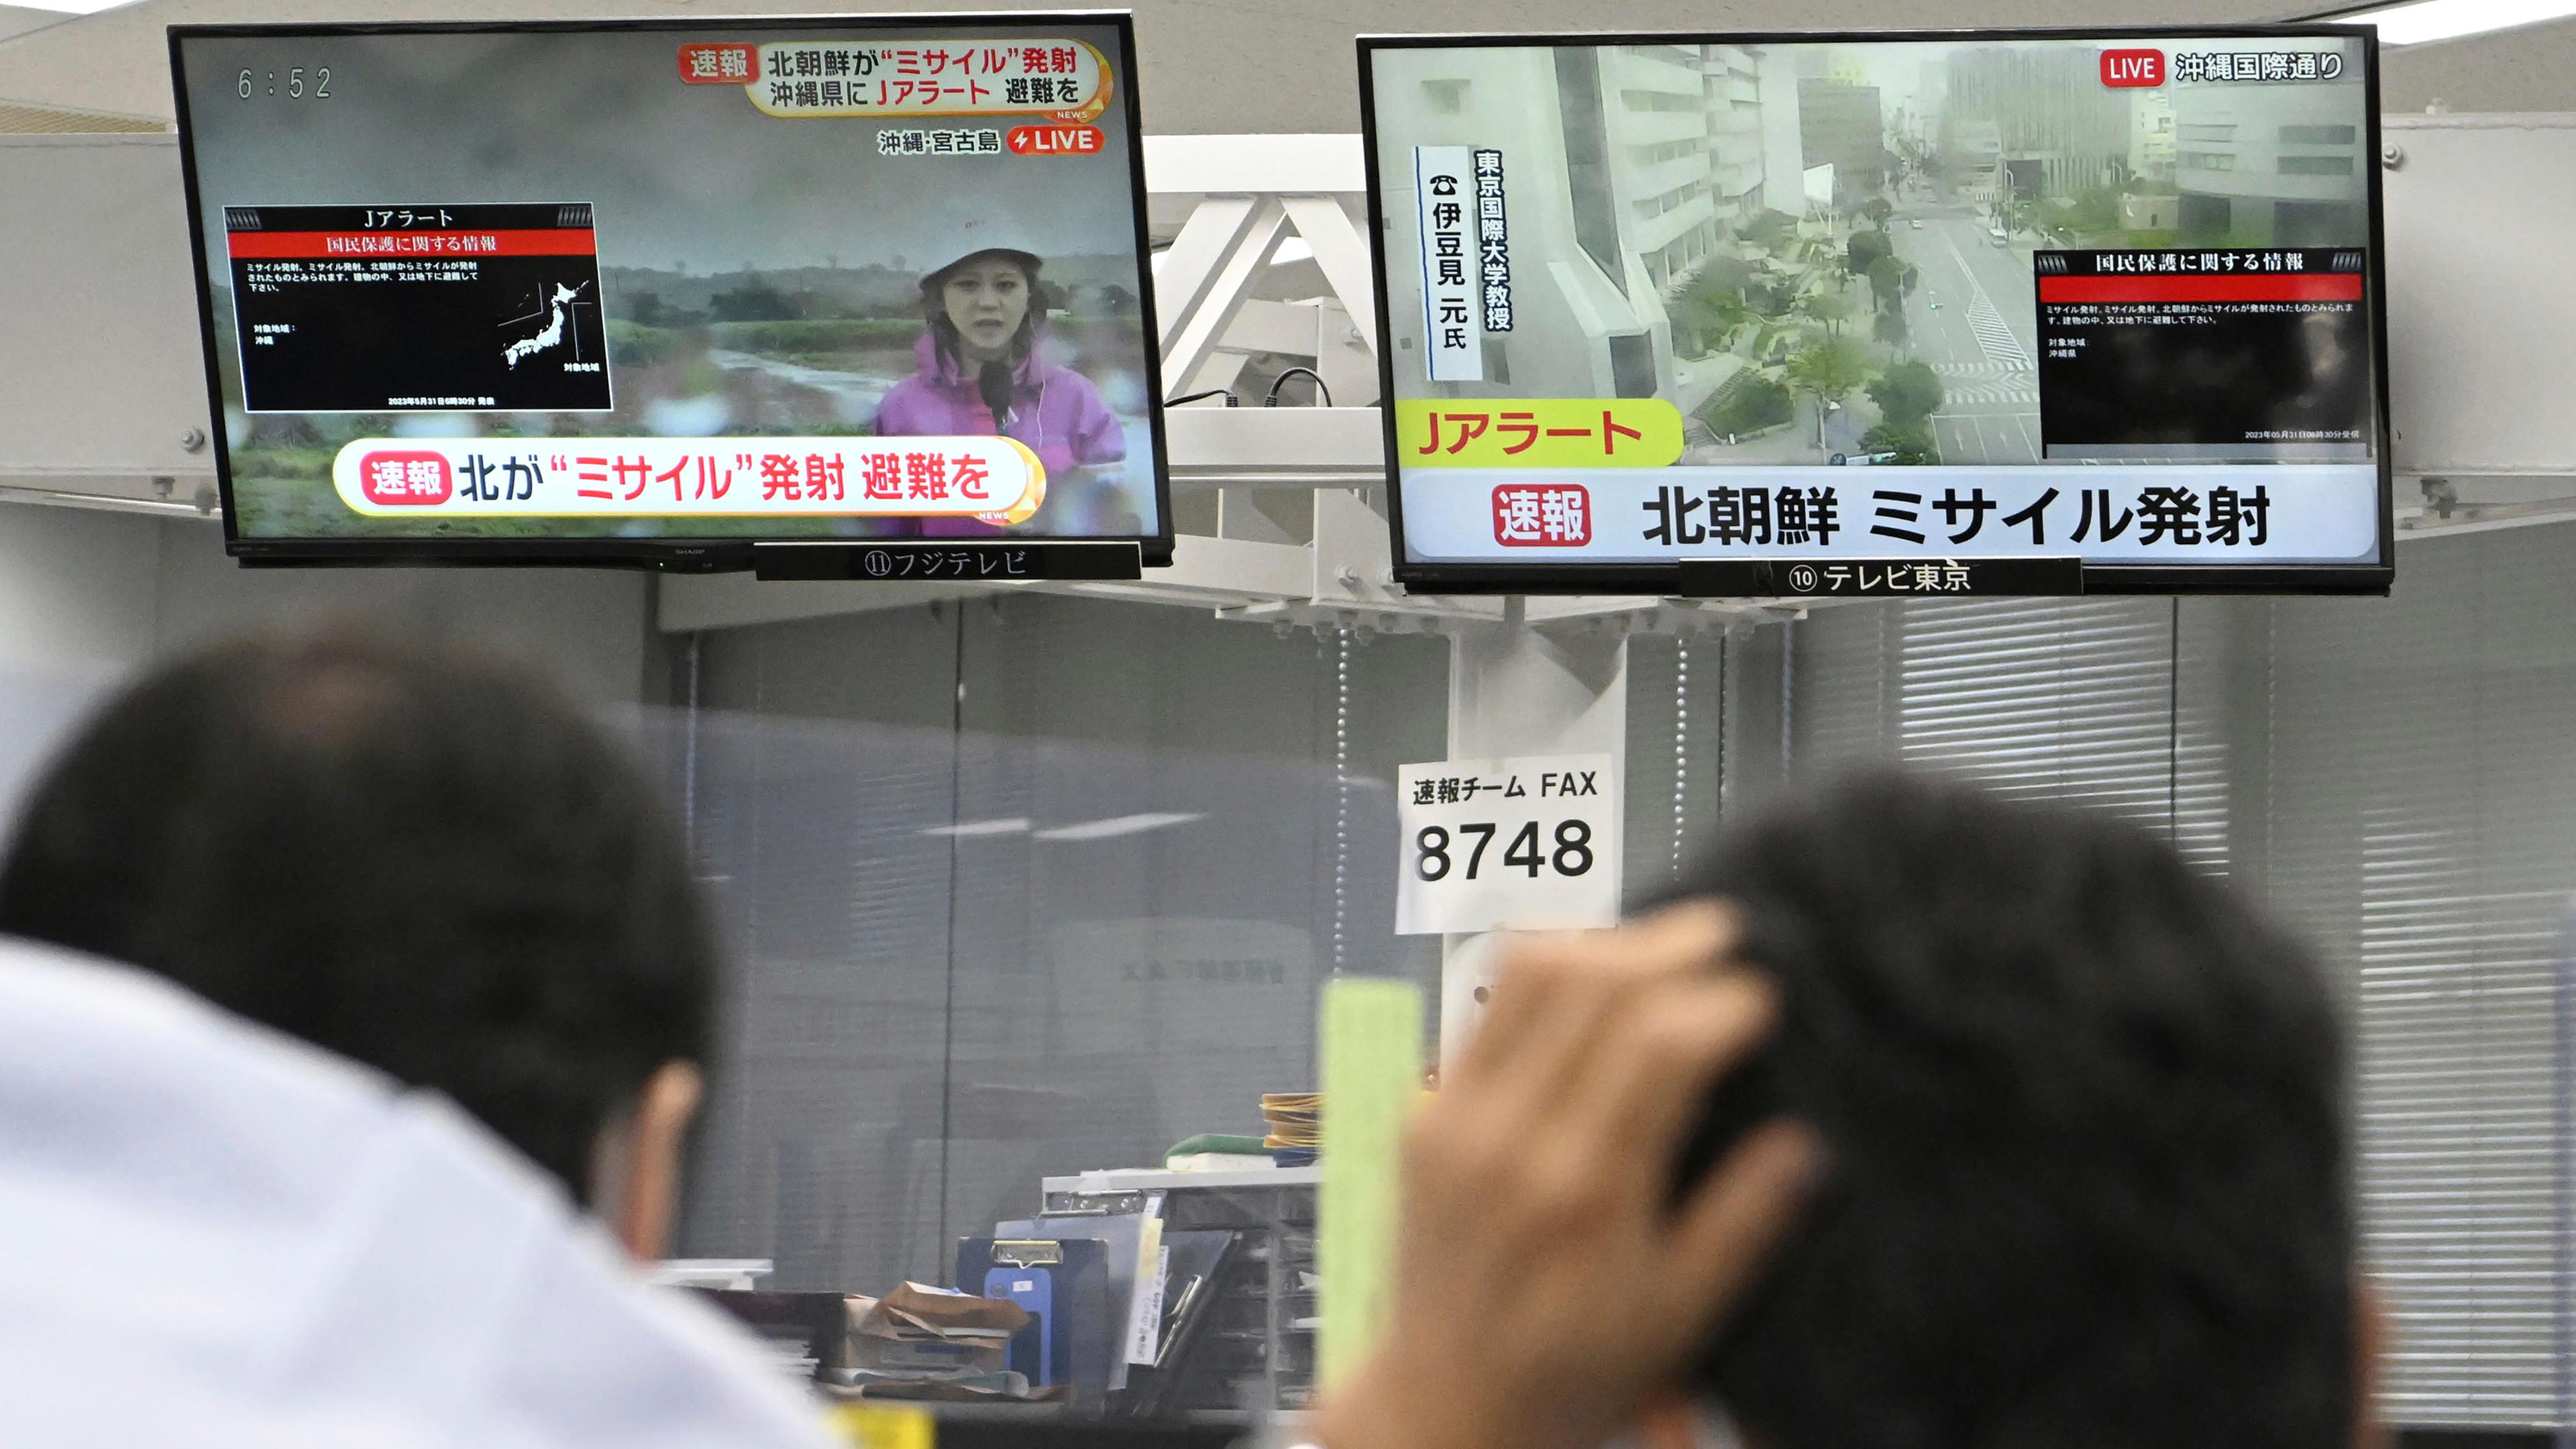 Zwei Männer schauen auf zwei Bildschirme die TV-Nachrichten zeigen. 